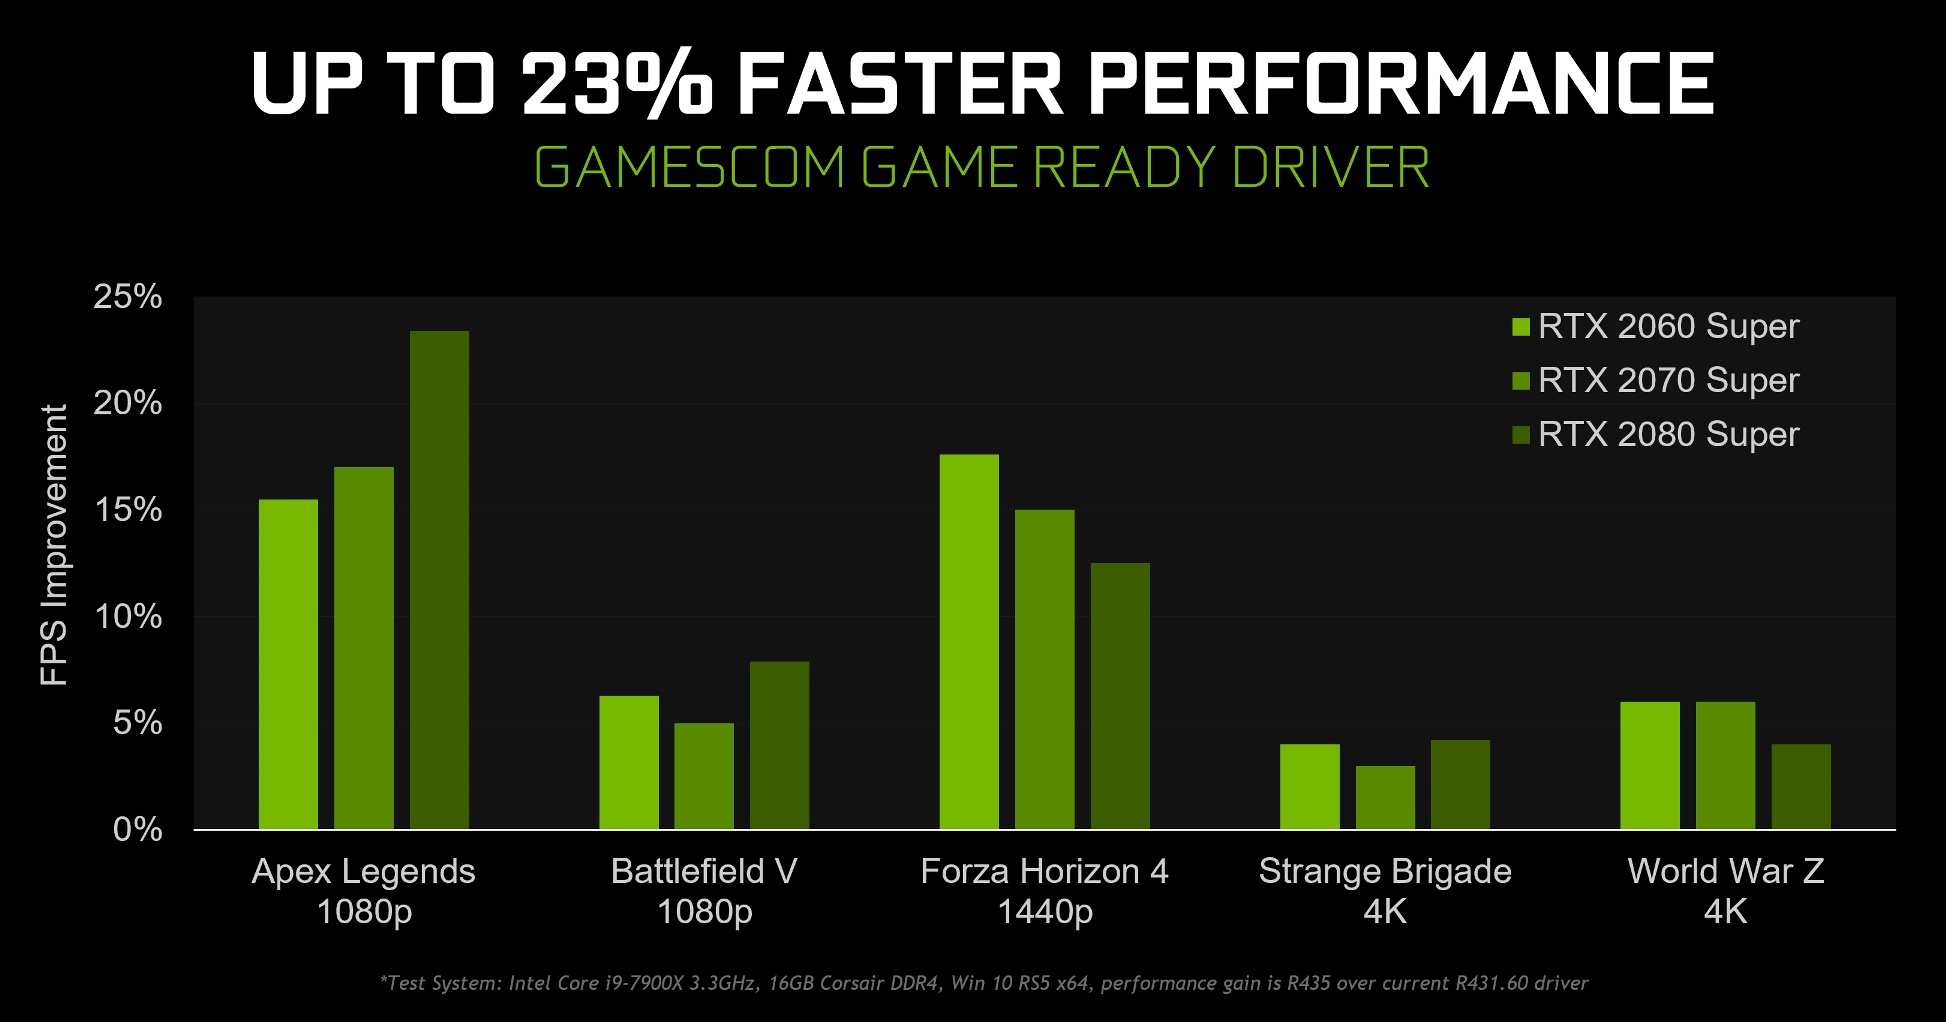 Крупное обновление. Новые драйвера NVIDIA GeForce 436.02 WHQL обеспечивают прирост кадровой частоты в играх на 23%